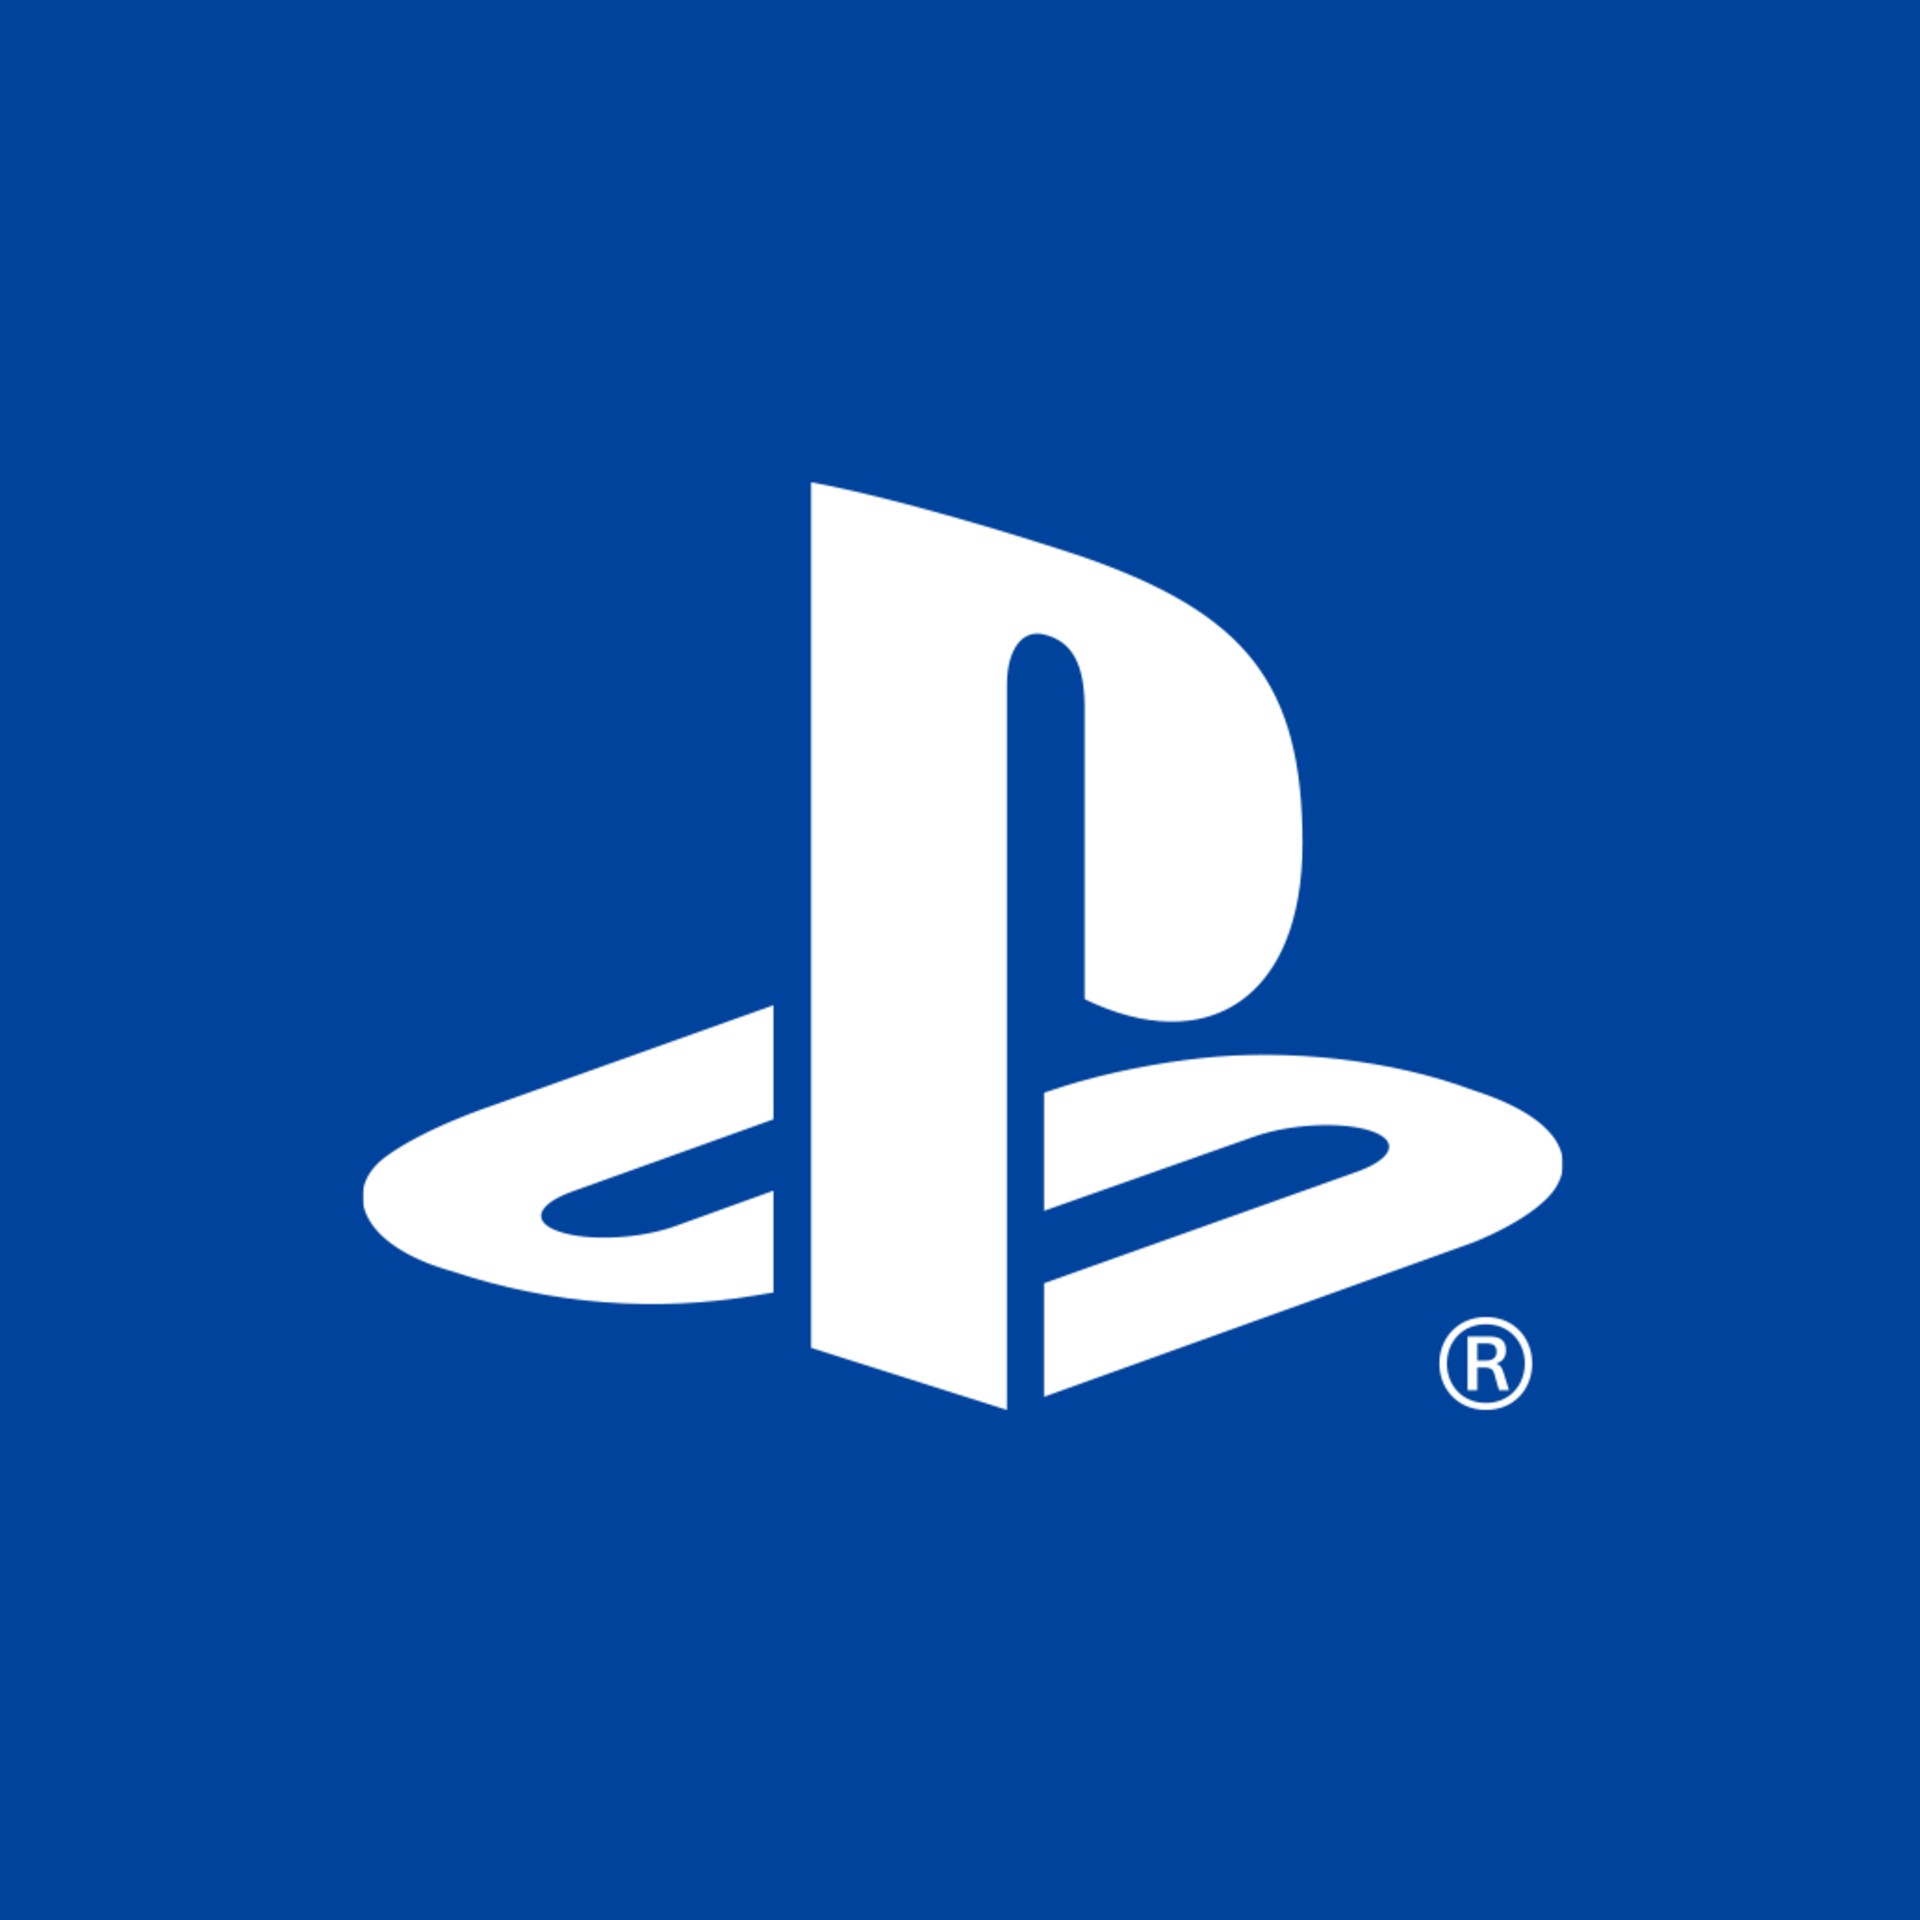 PlayStation Studios เปิดหน้าร้านภายใน Steam อย่างเป็นทางการแล้ว